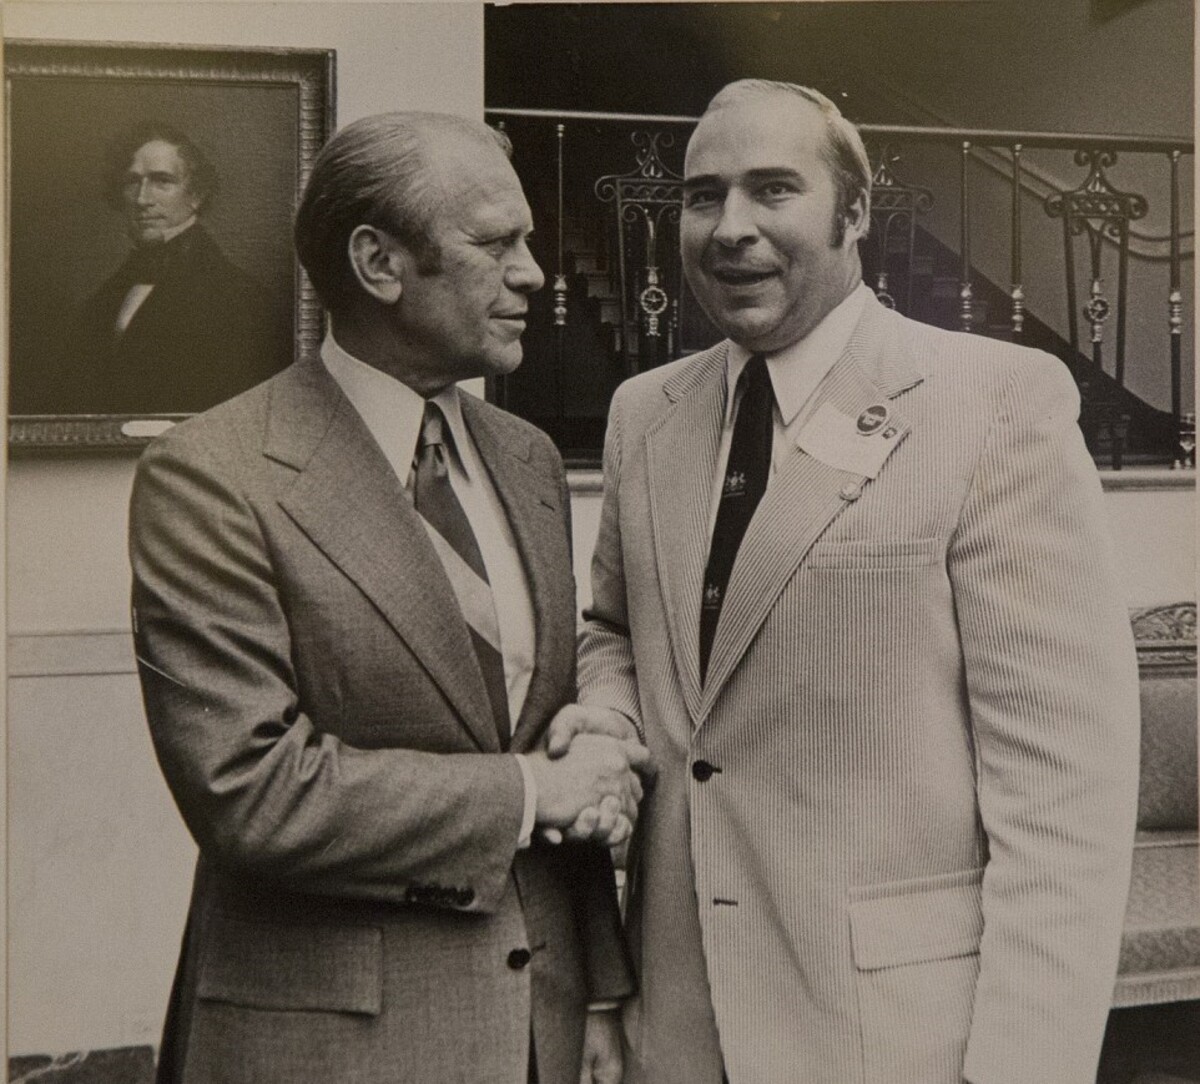 Fotografia zo 70. rokov, na ktorej sa nachádza Dwyer (vpravo) s vtedajším americkým prezidentom Geraldom Fordom.